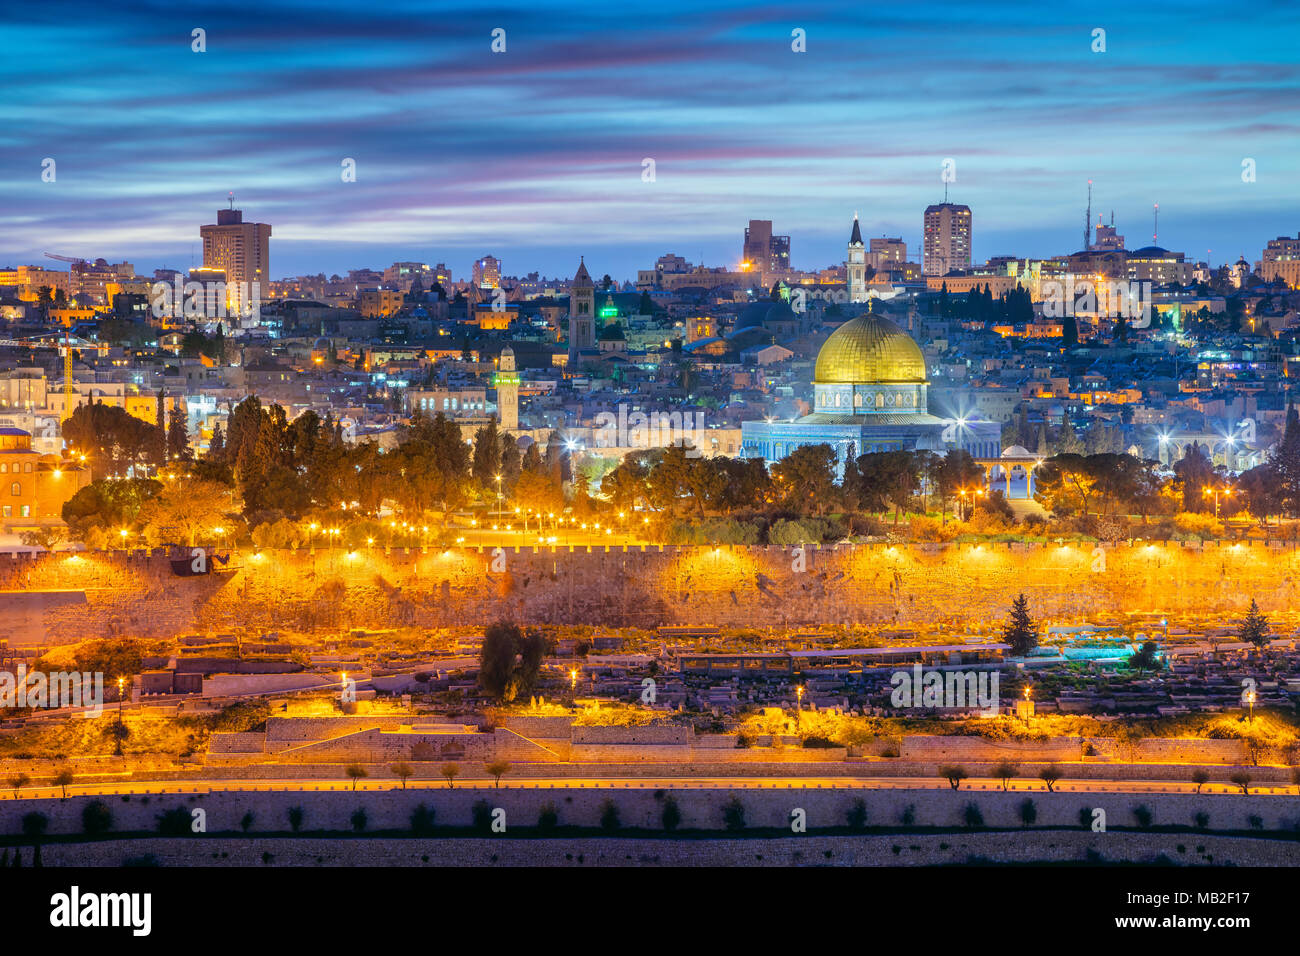 Vieille ville de Jérusalem. Cityscape image de Jérusalem, Israël avec dôme du Rocher au coucher du soleil. Banque D'Images